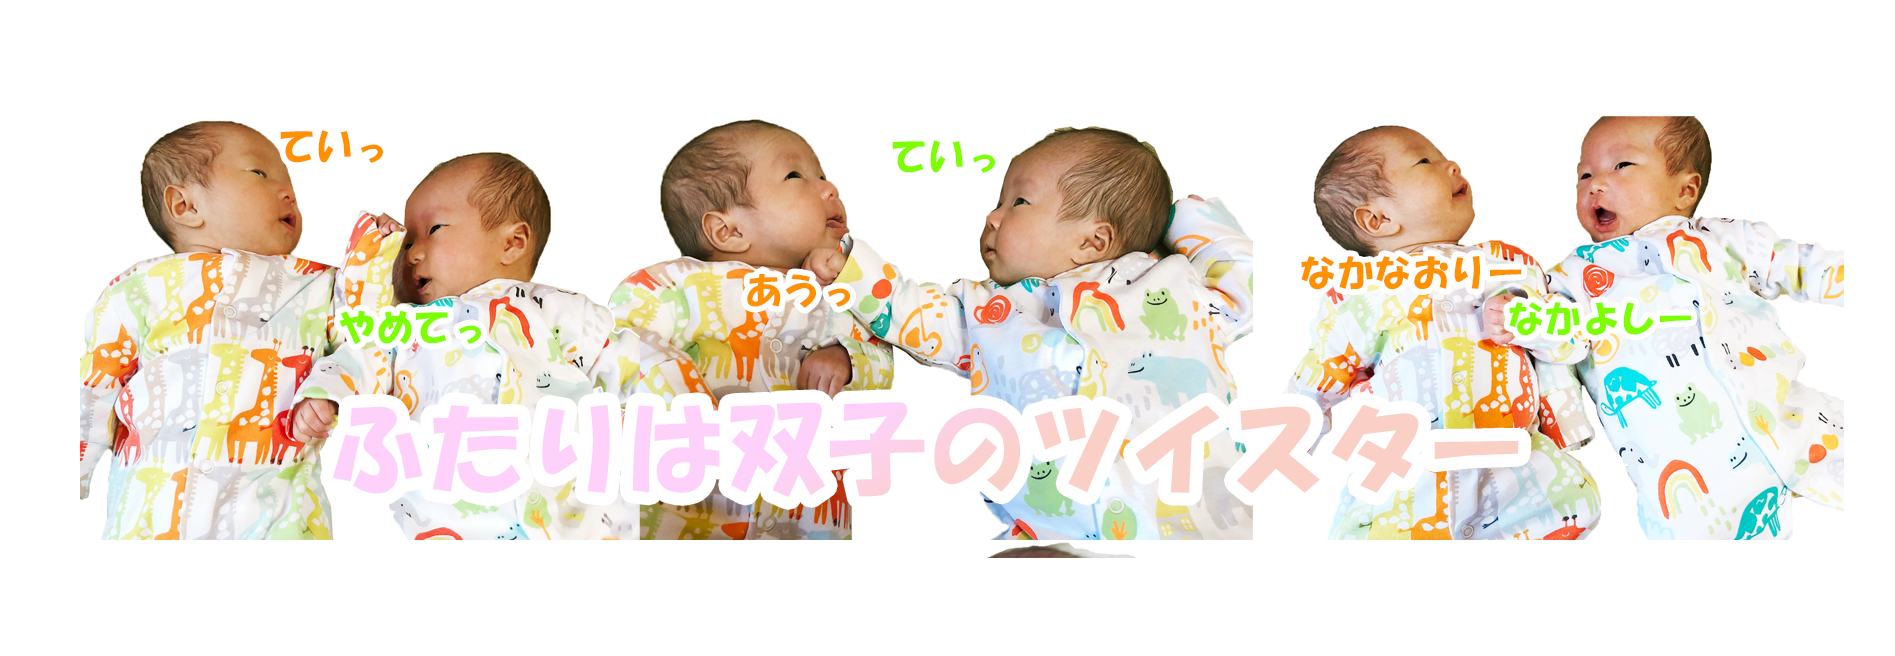 生後1ヶ月 顔や仕草もそっくり 一卵性双生児 ミルク量 睡眠量 体重などデータ公開 楽天ブログ